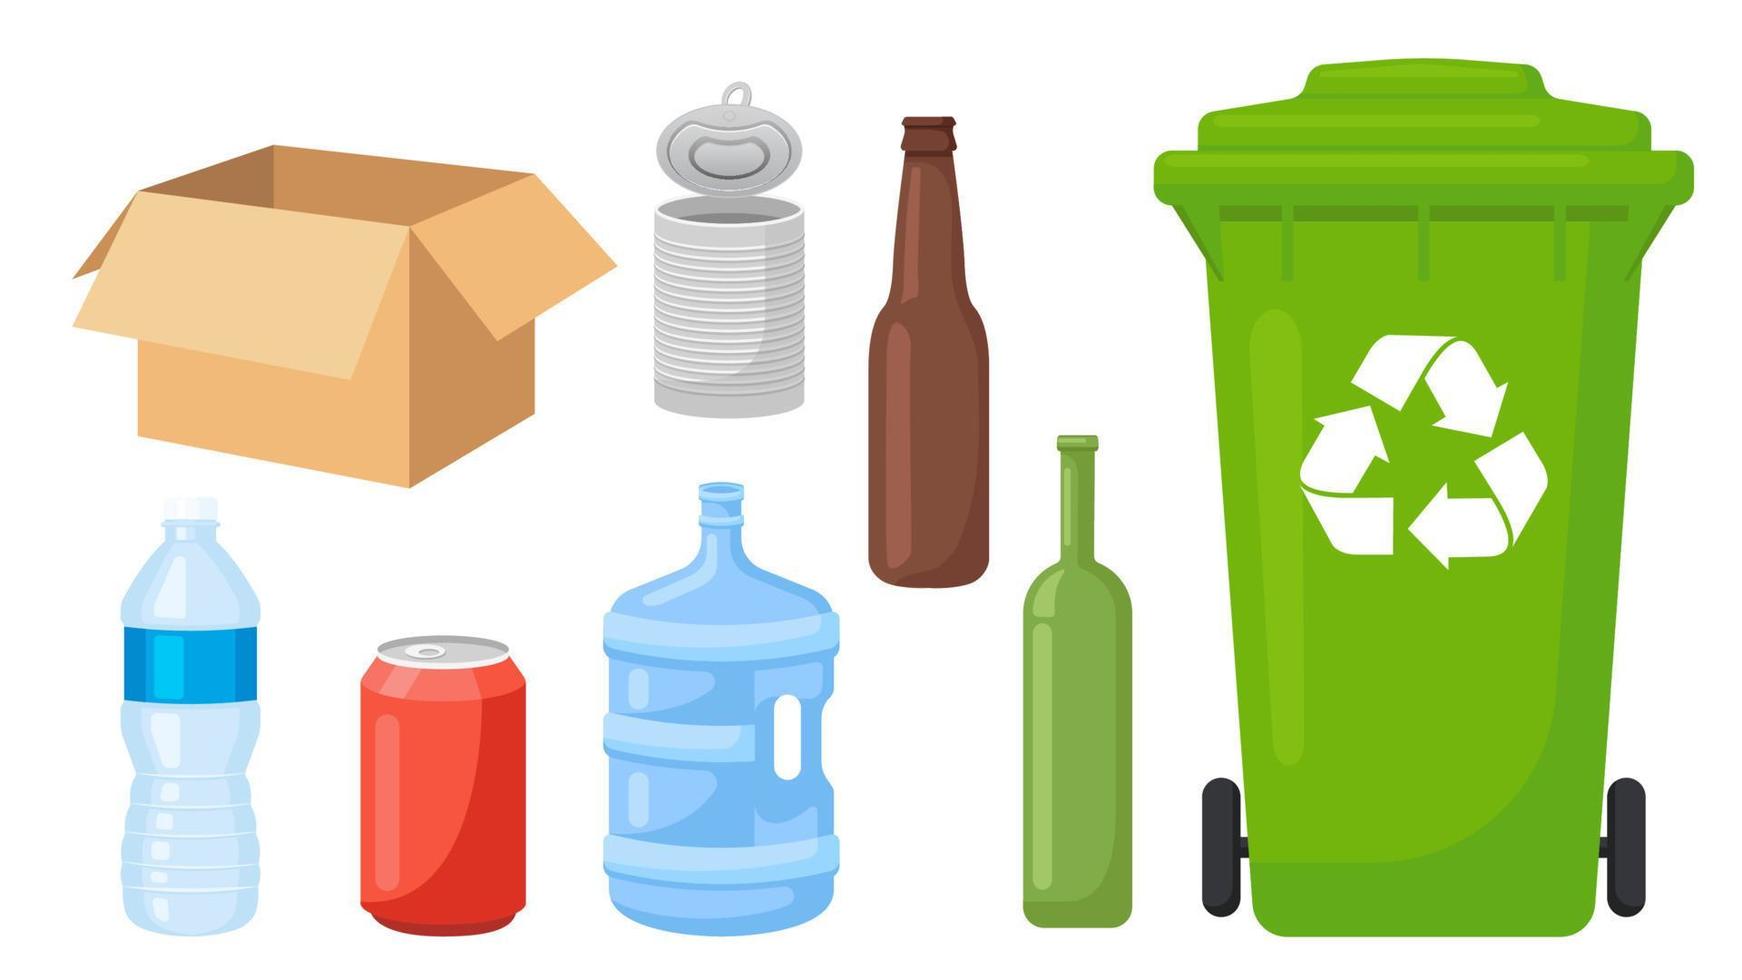 verzameling reeks van gerecycled vuilnis voorwerp uitschot bak plastic fles papier doos kan glas fles vector